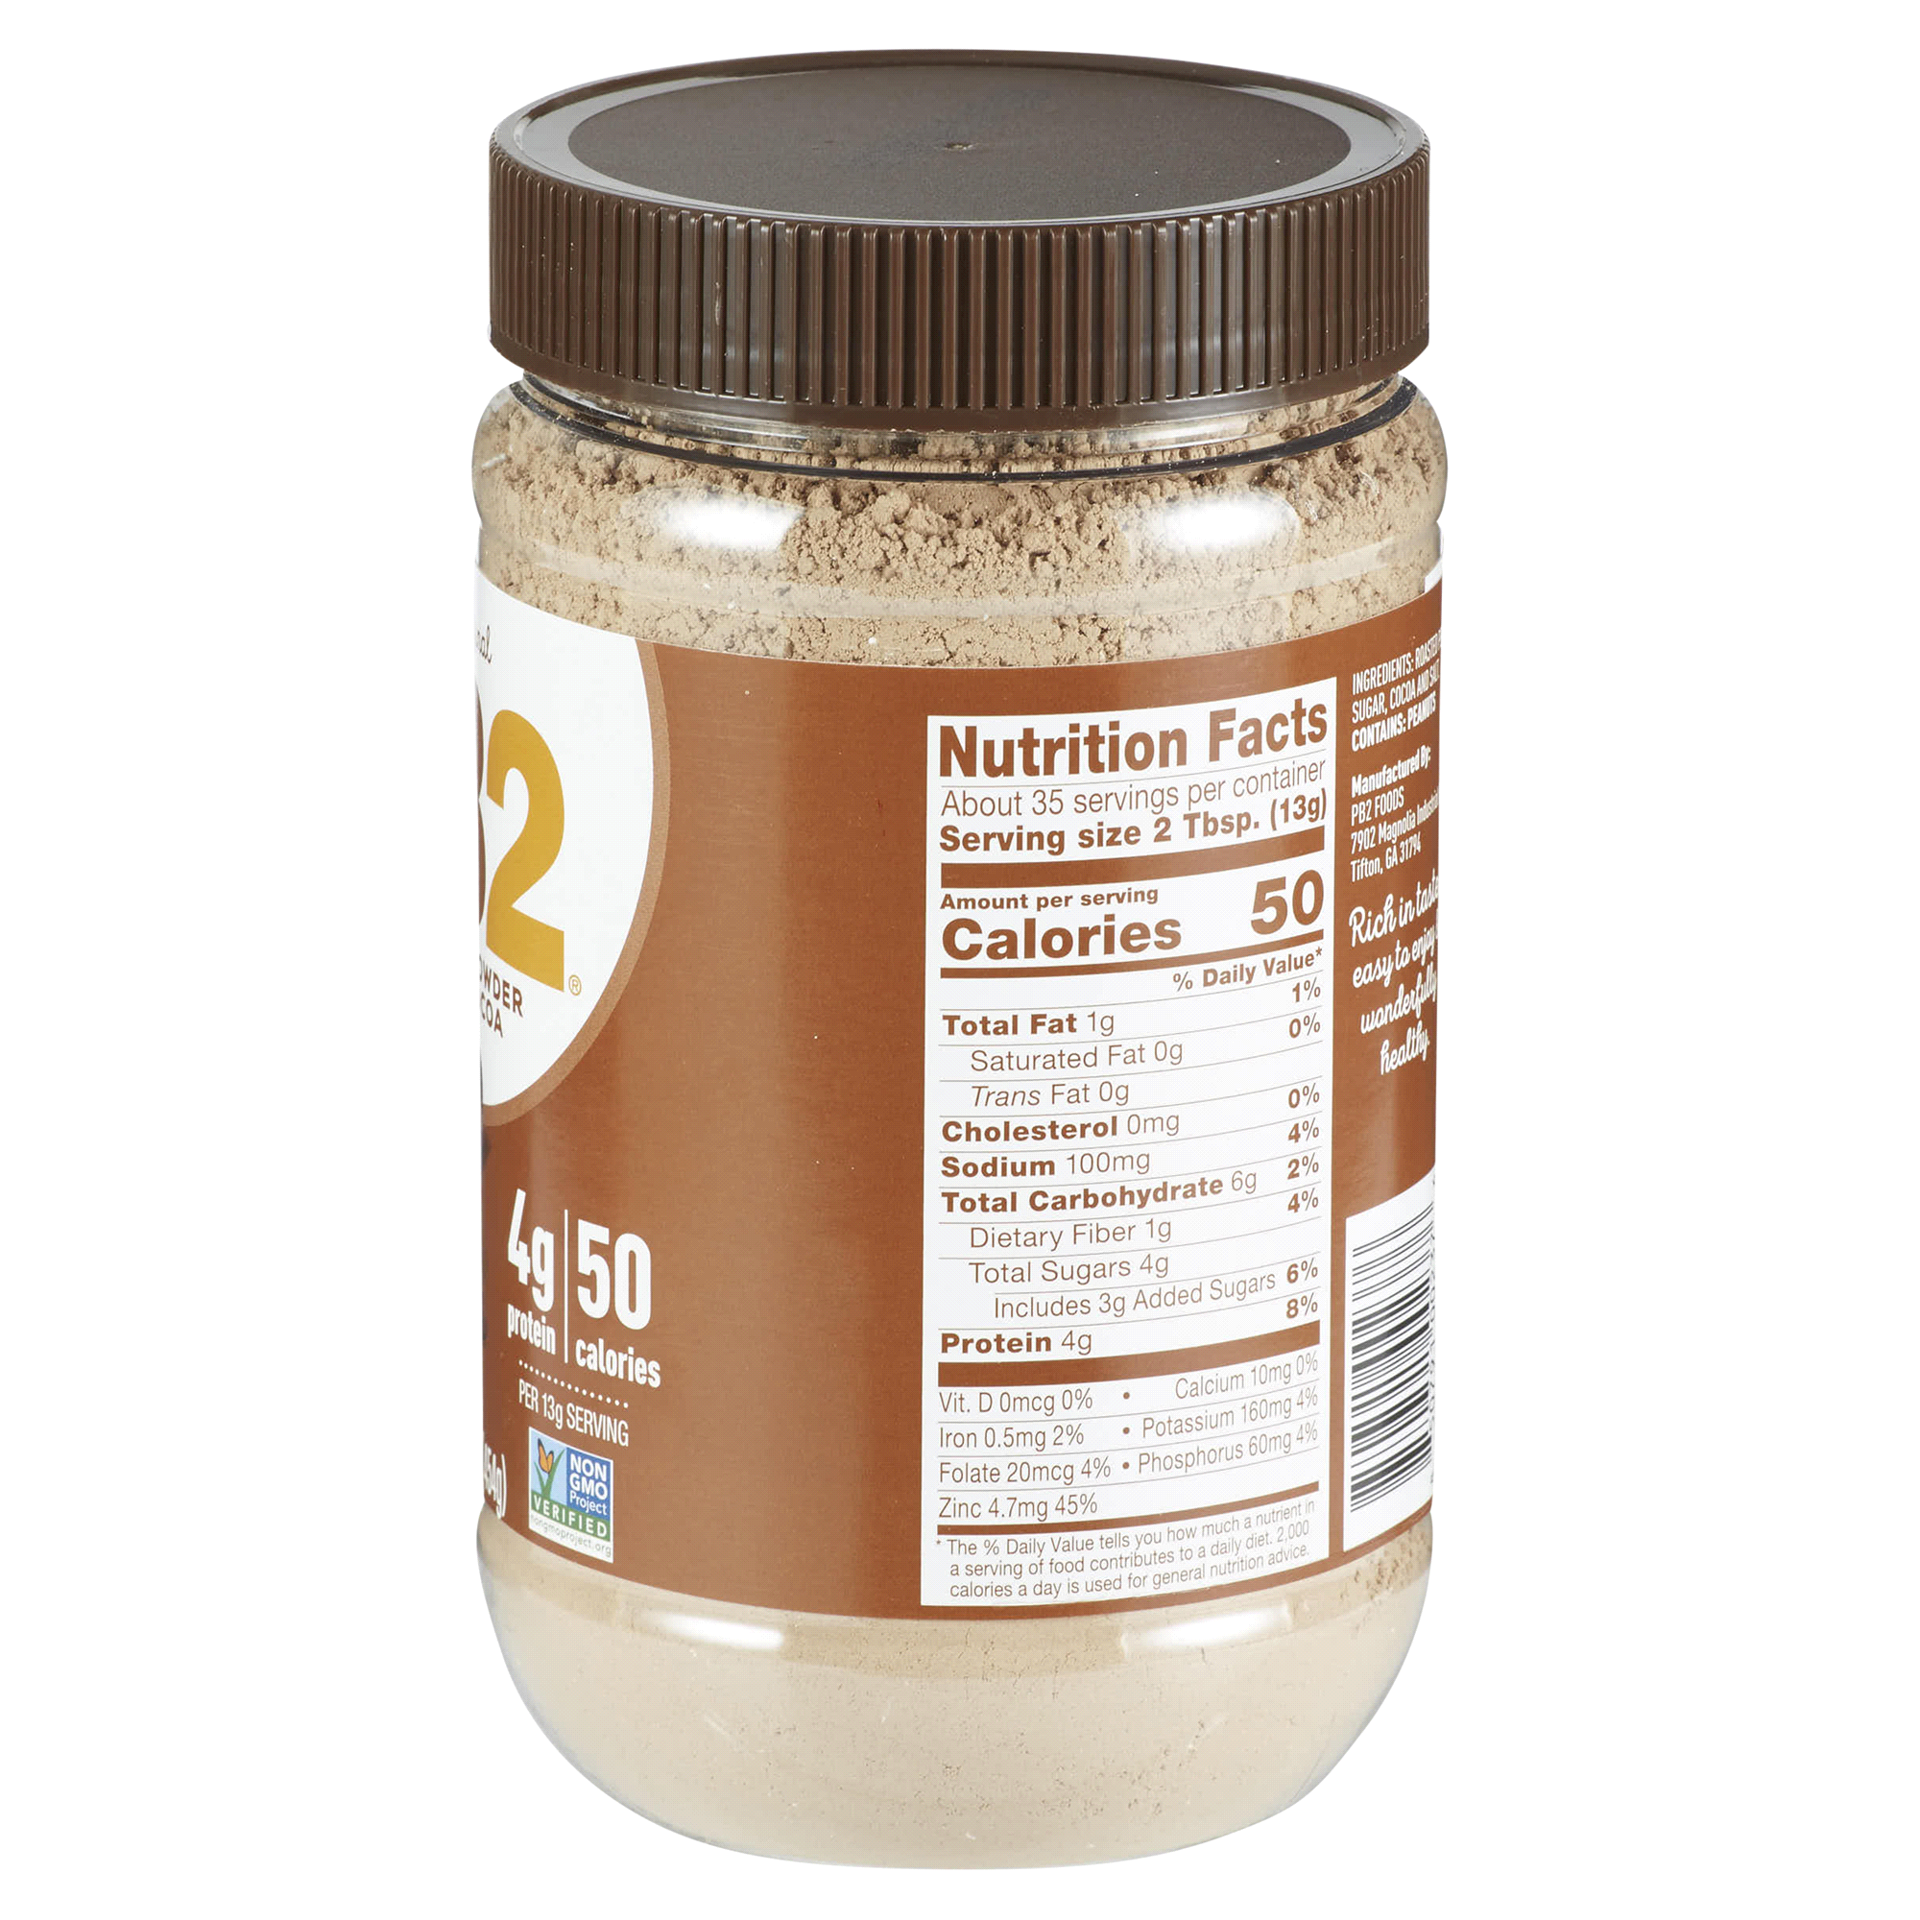 PB2 Powdered Peanut Butter, 16 oz